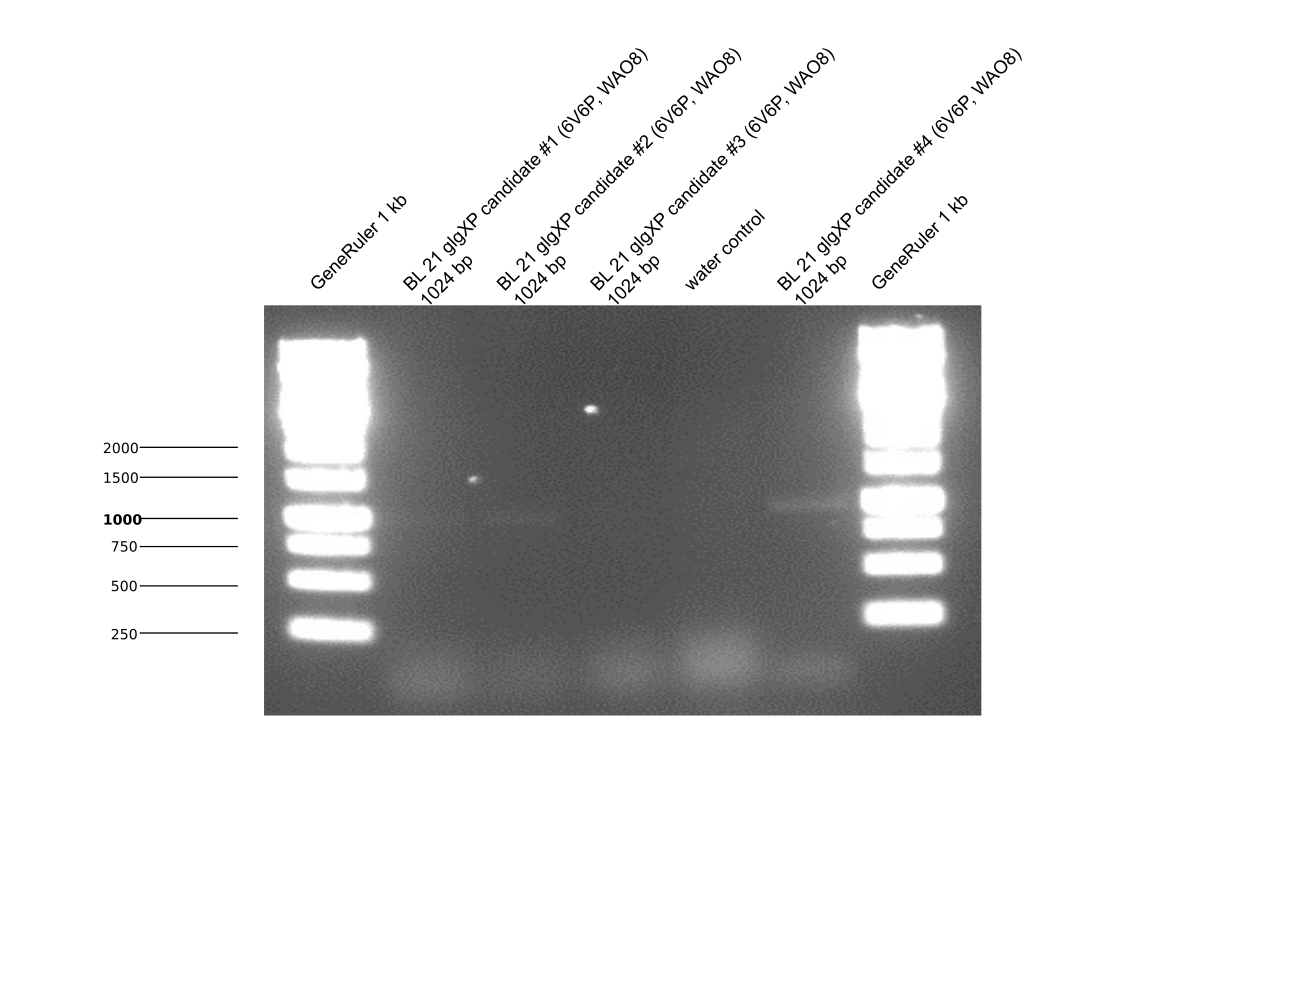 Aachen 15-08-12 glgXP BL21 PfuS PCR.png